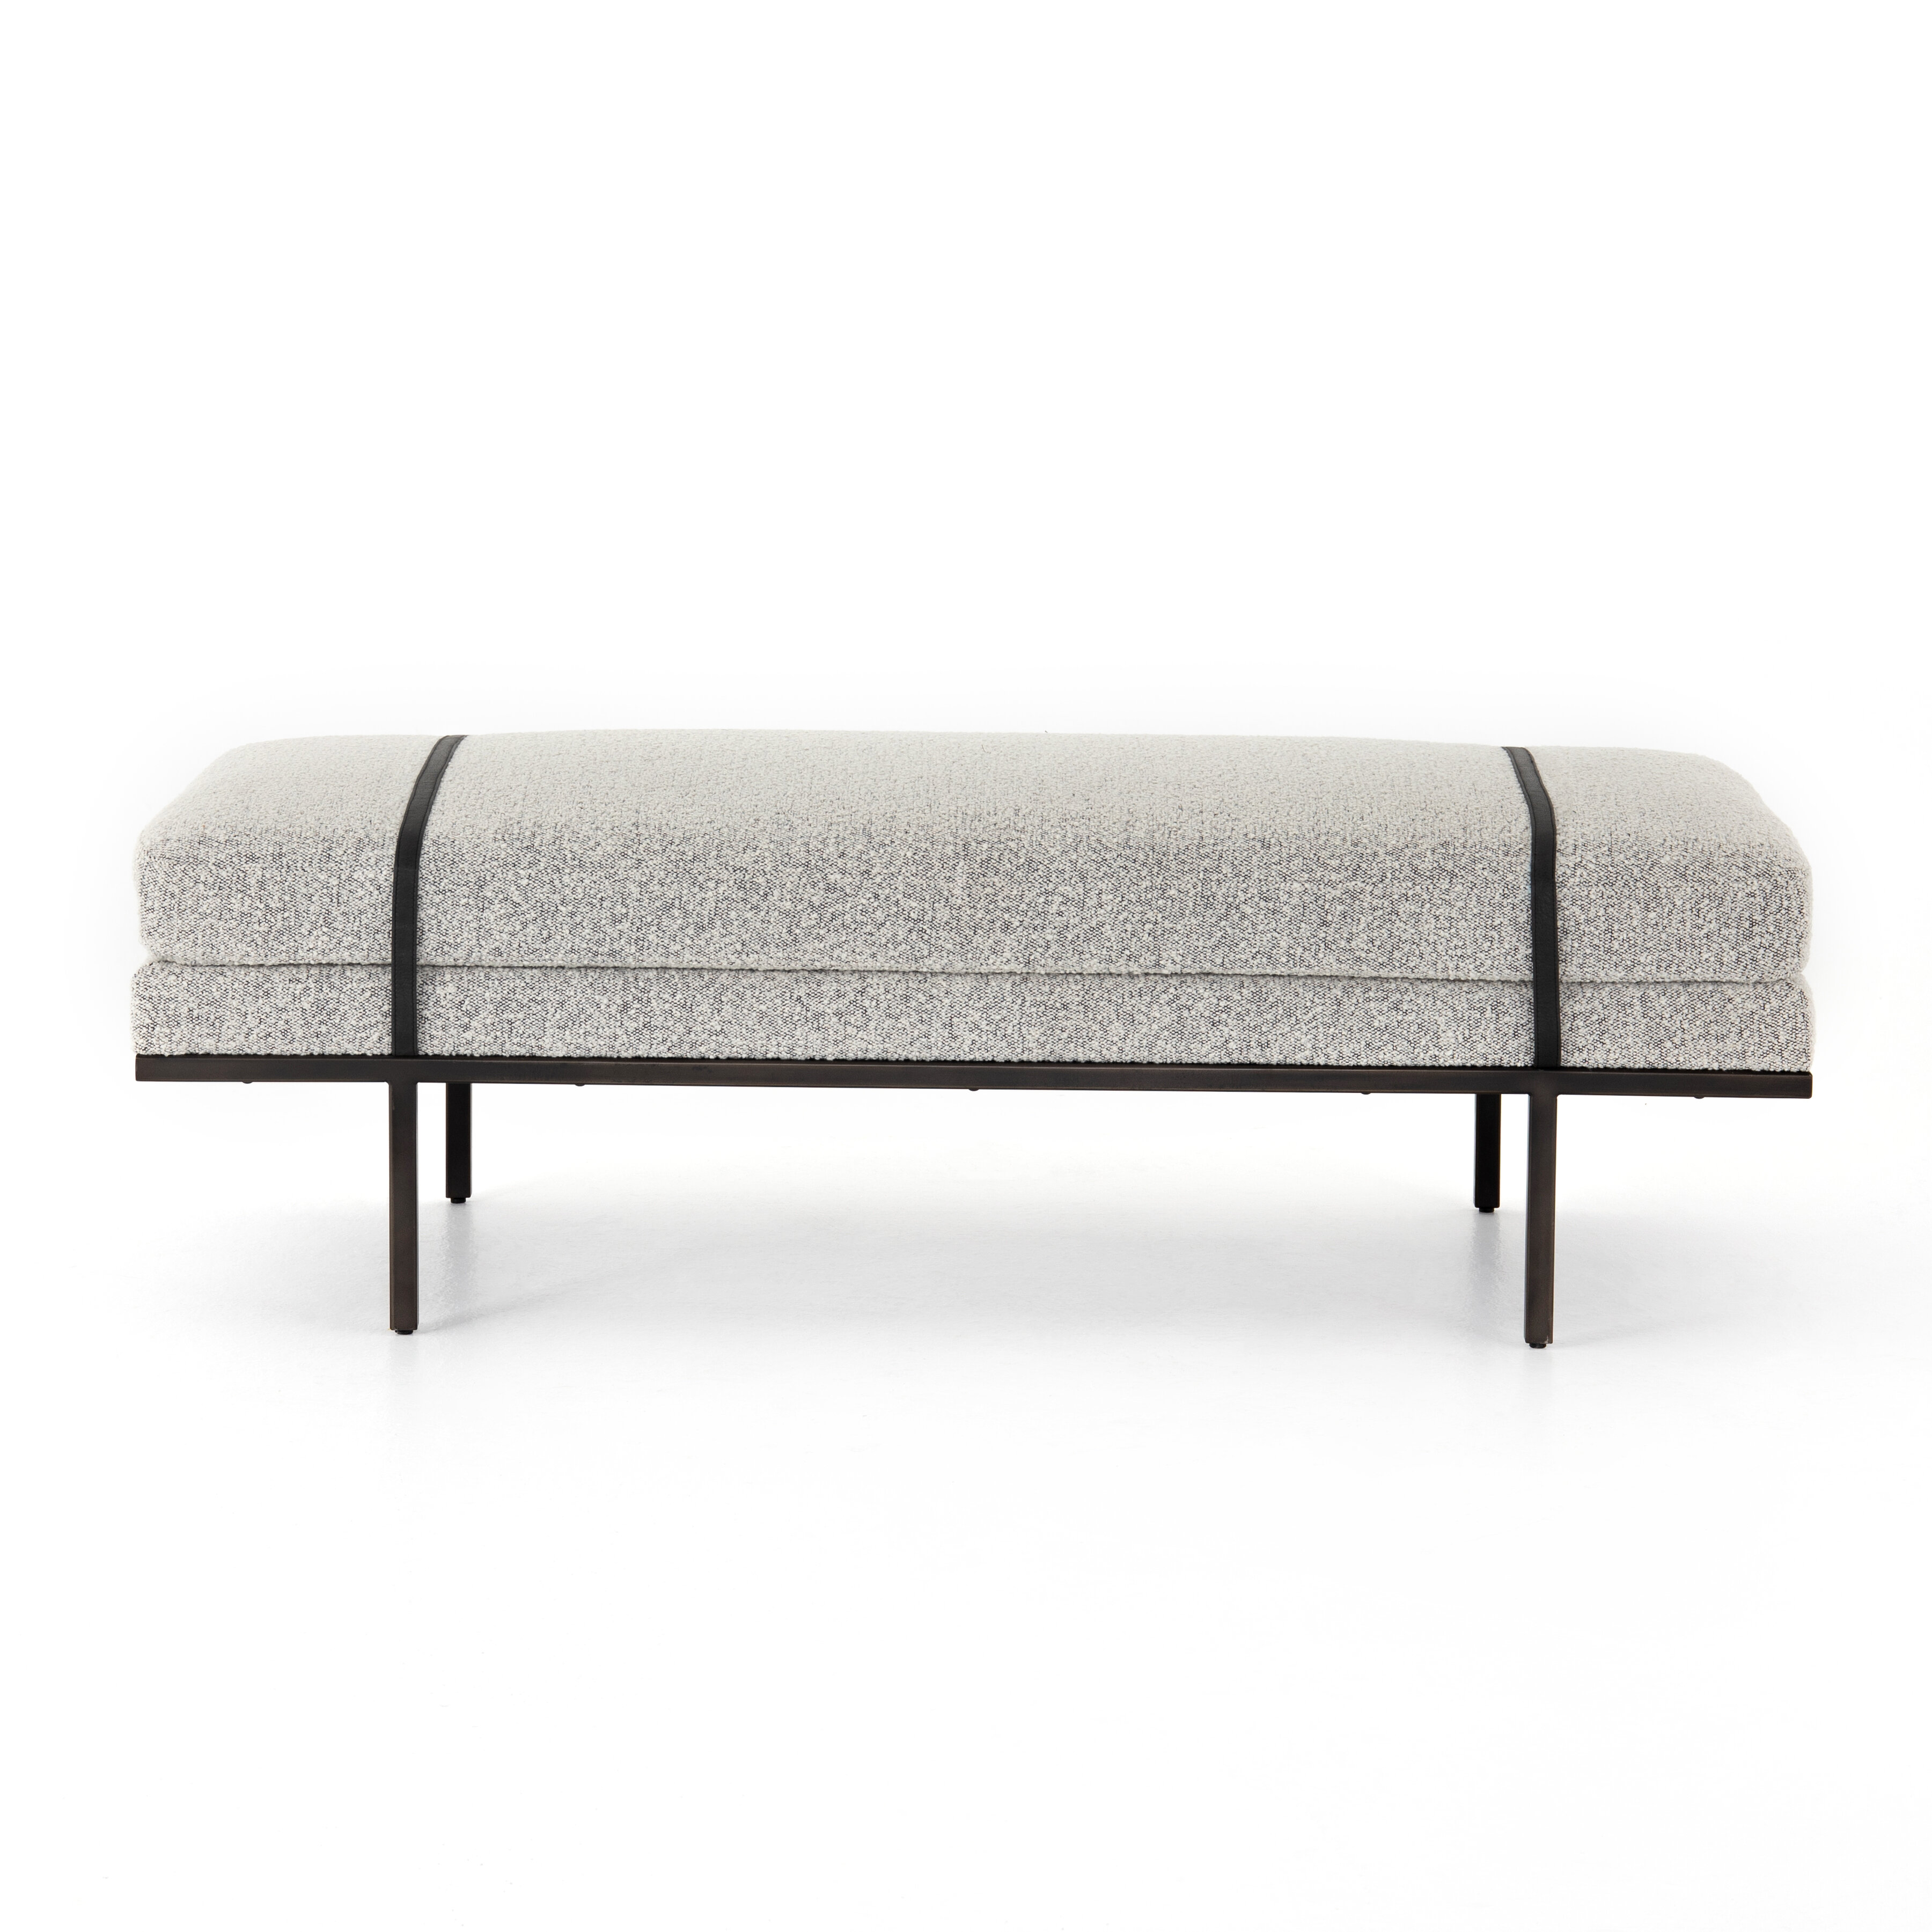 Upholstered Bench Allmodern